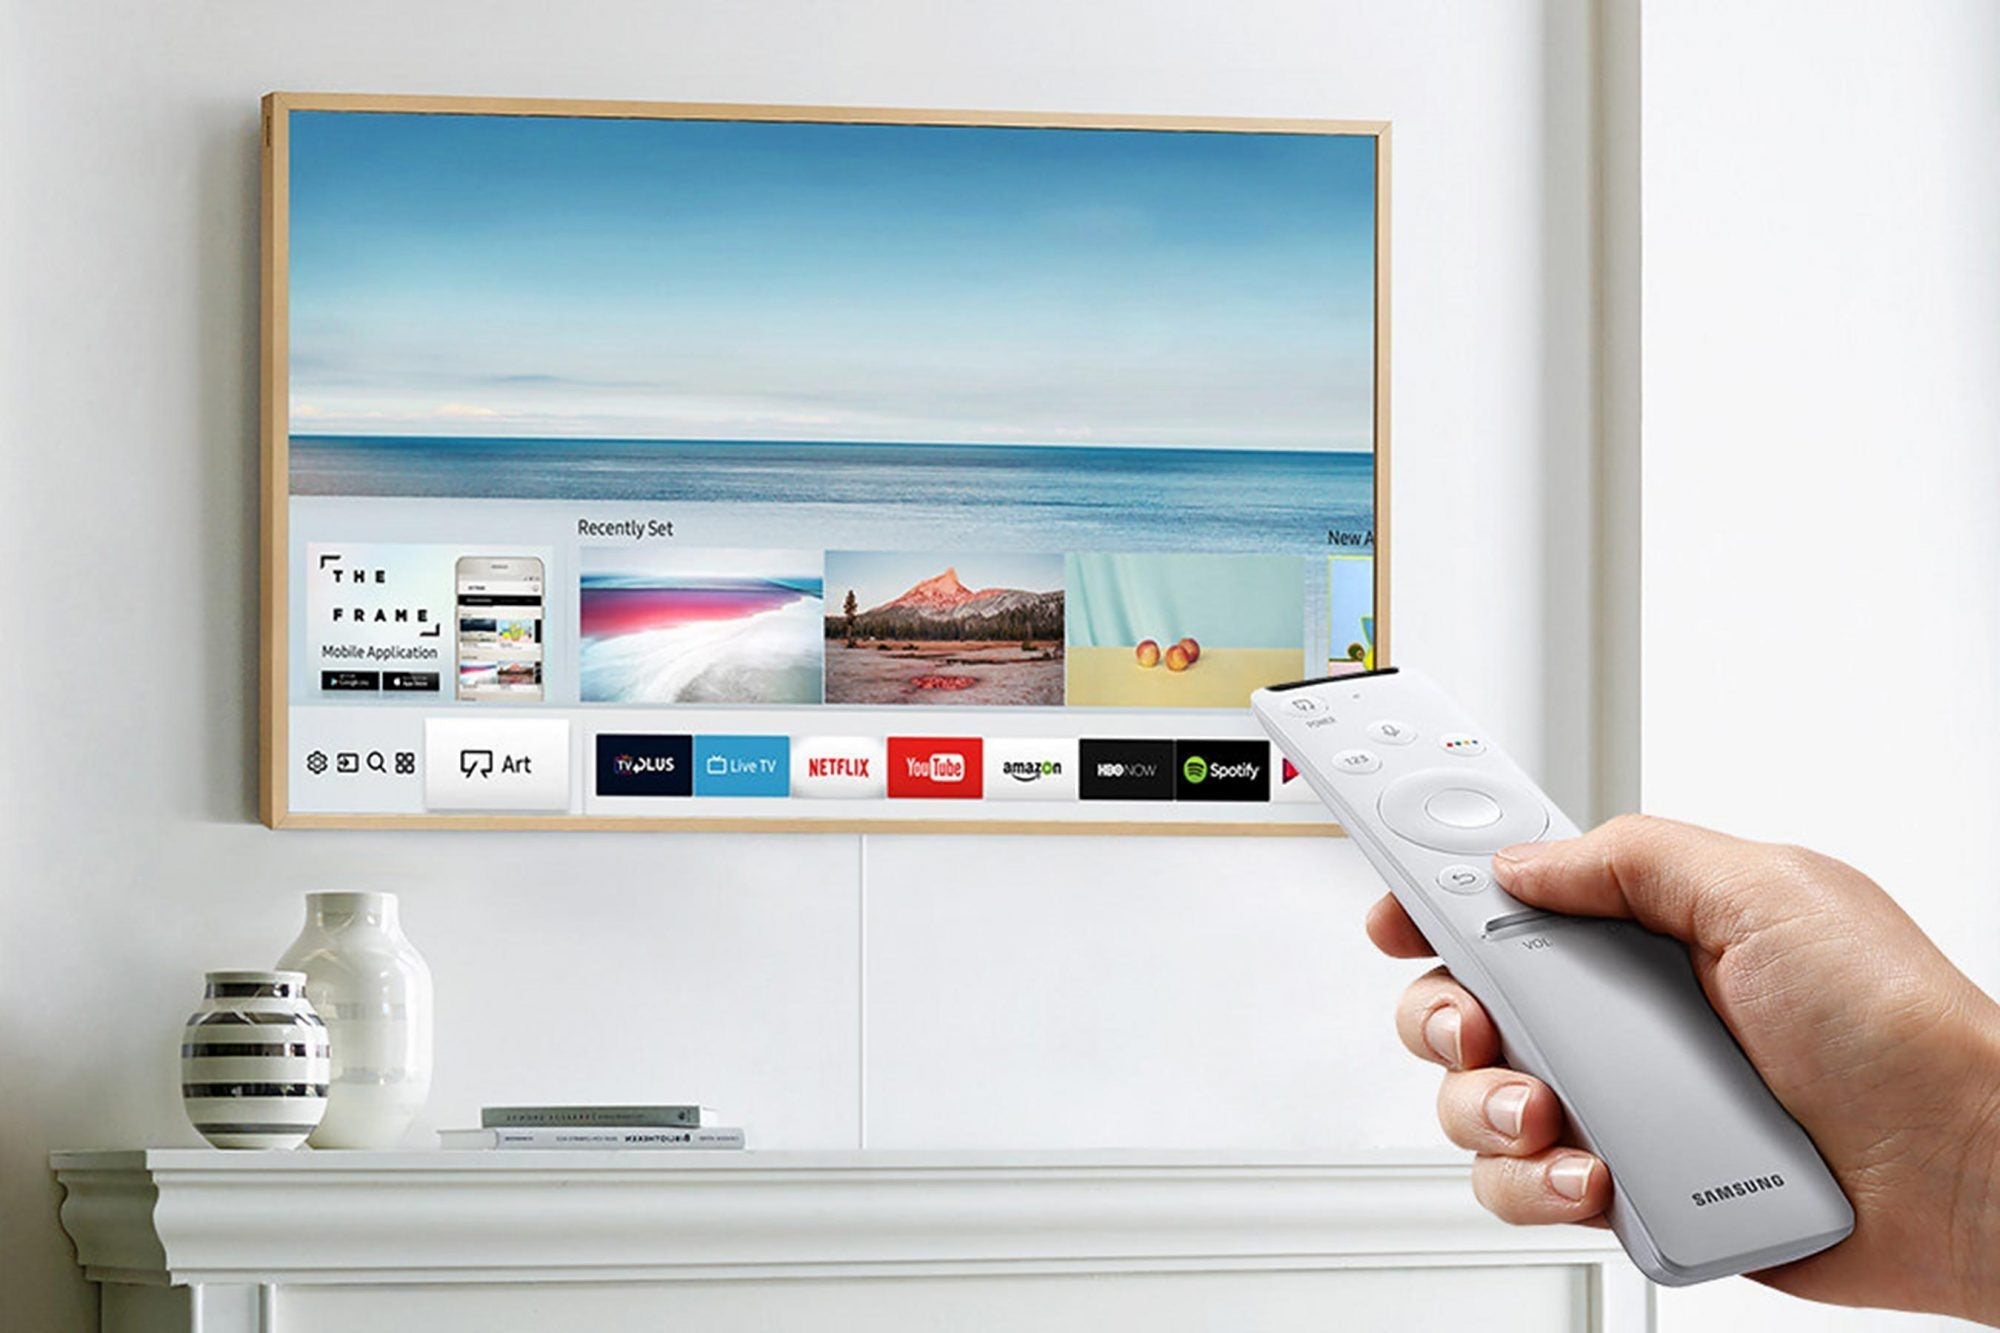 Samsung "The Frame" QLED 4K Smart TV (2022 Models)